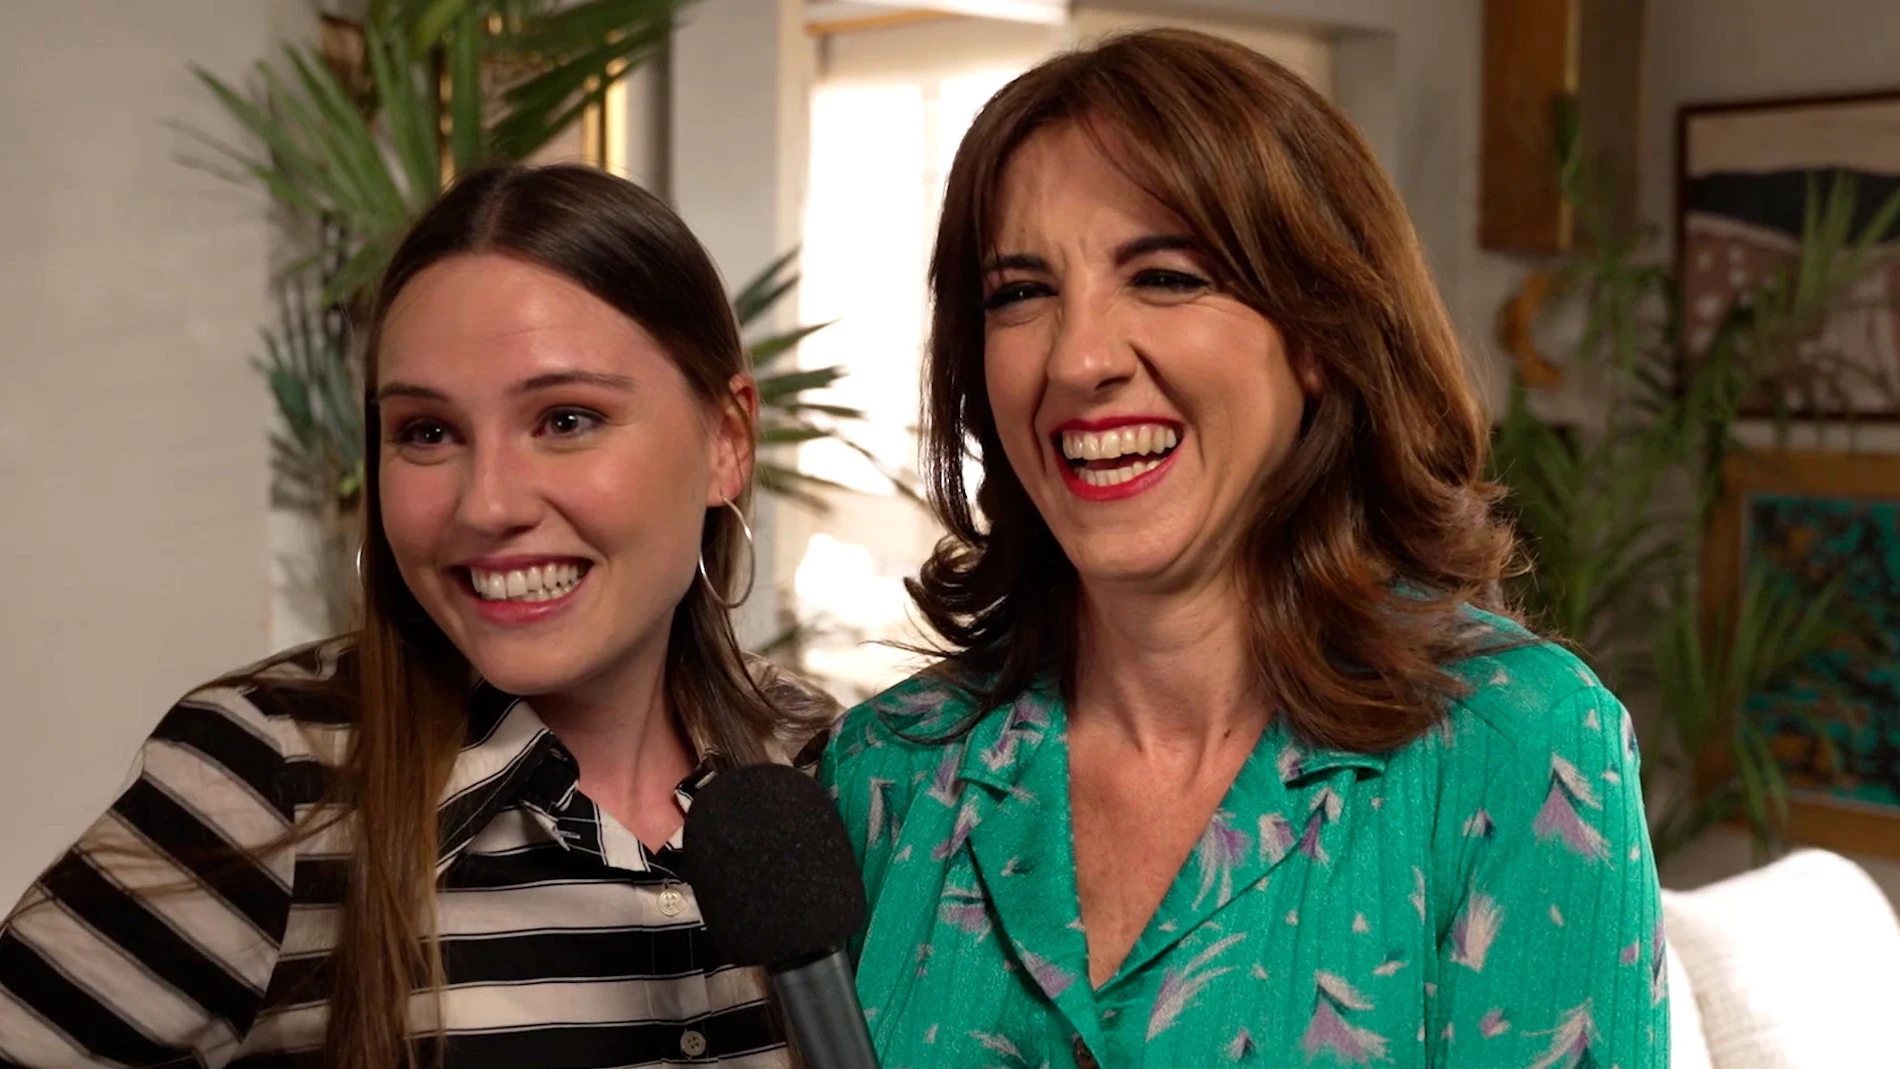 Isabel Moreno y Llum Barrera se despiden de la novena temporada con un deseo: "Larga vida a 'Amar'"